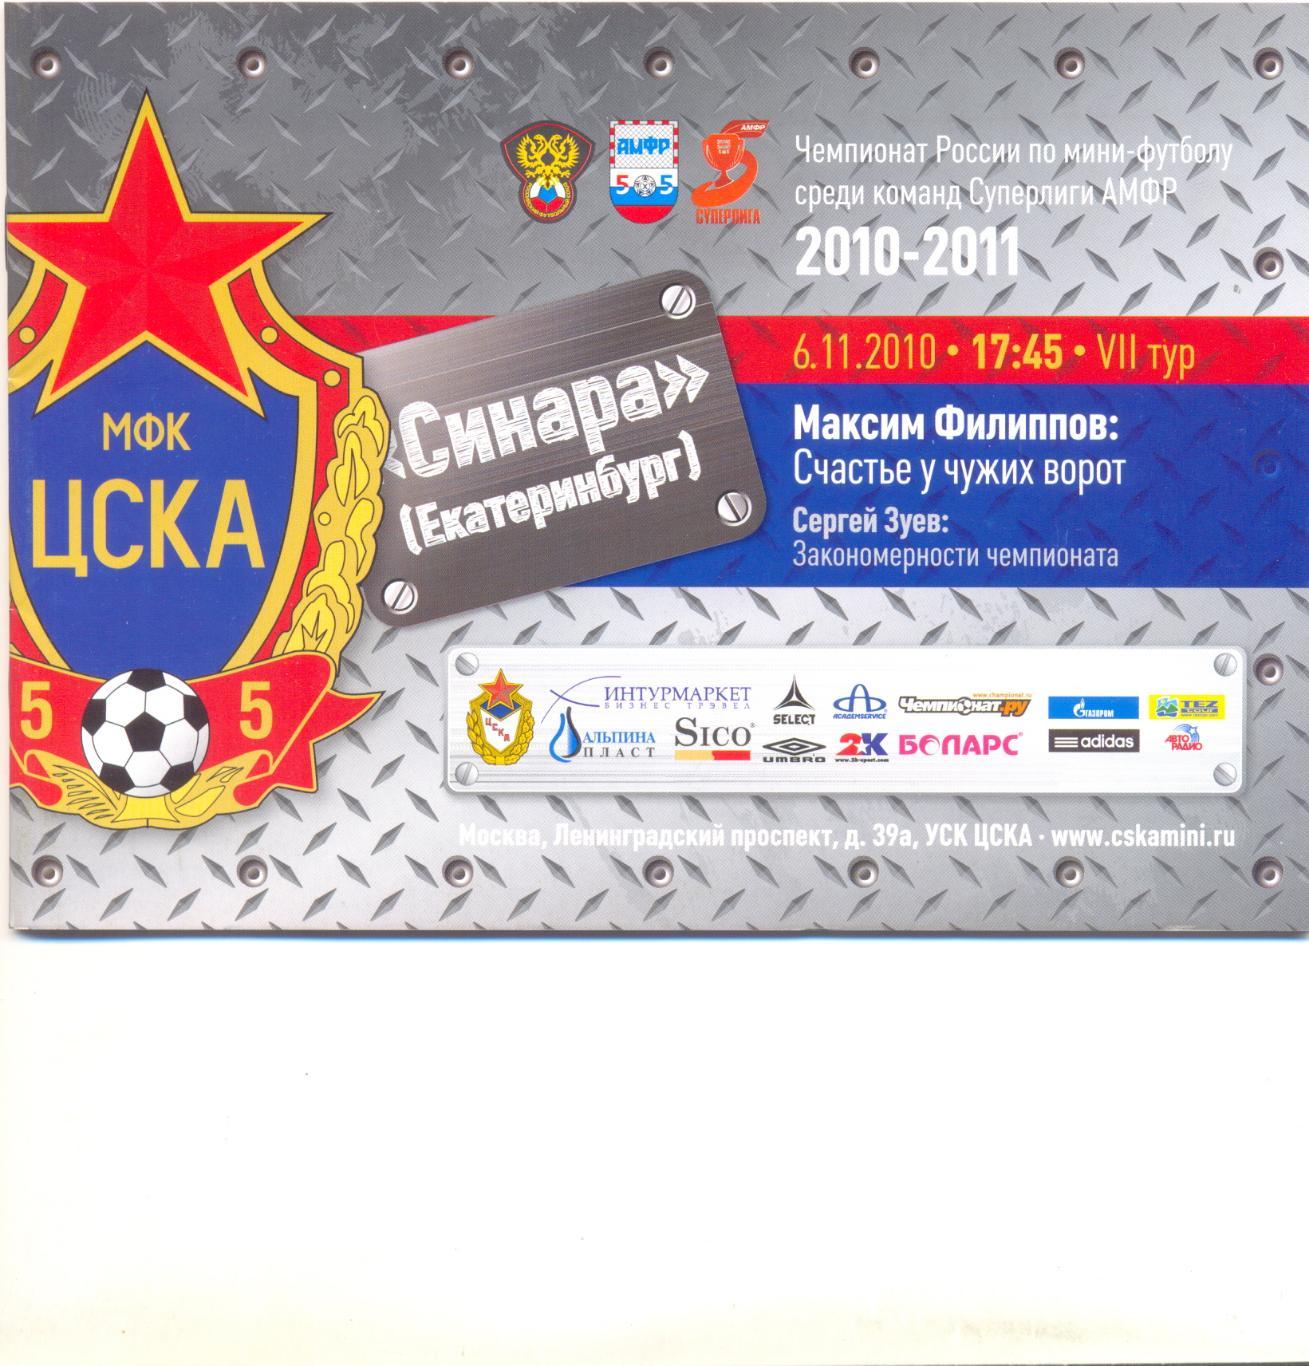 ЦСКА - Синара 2010